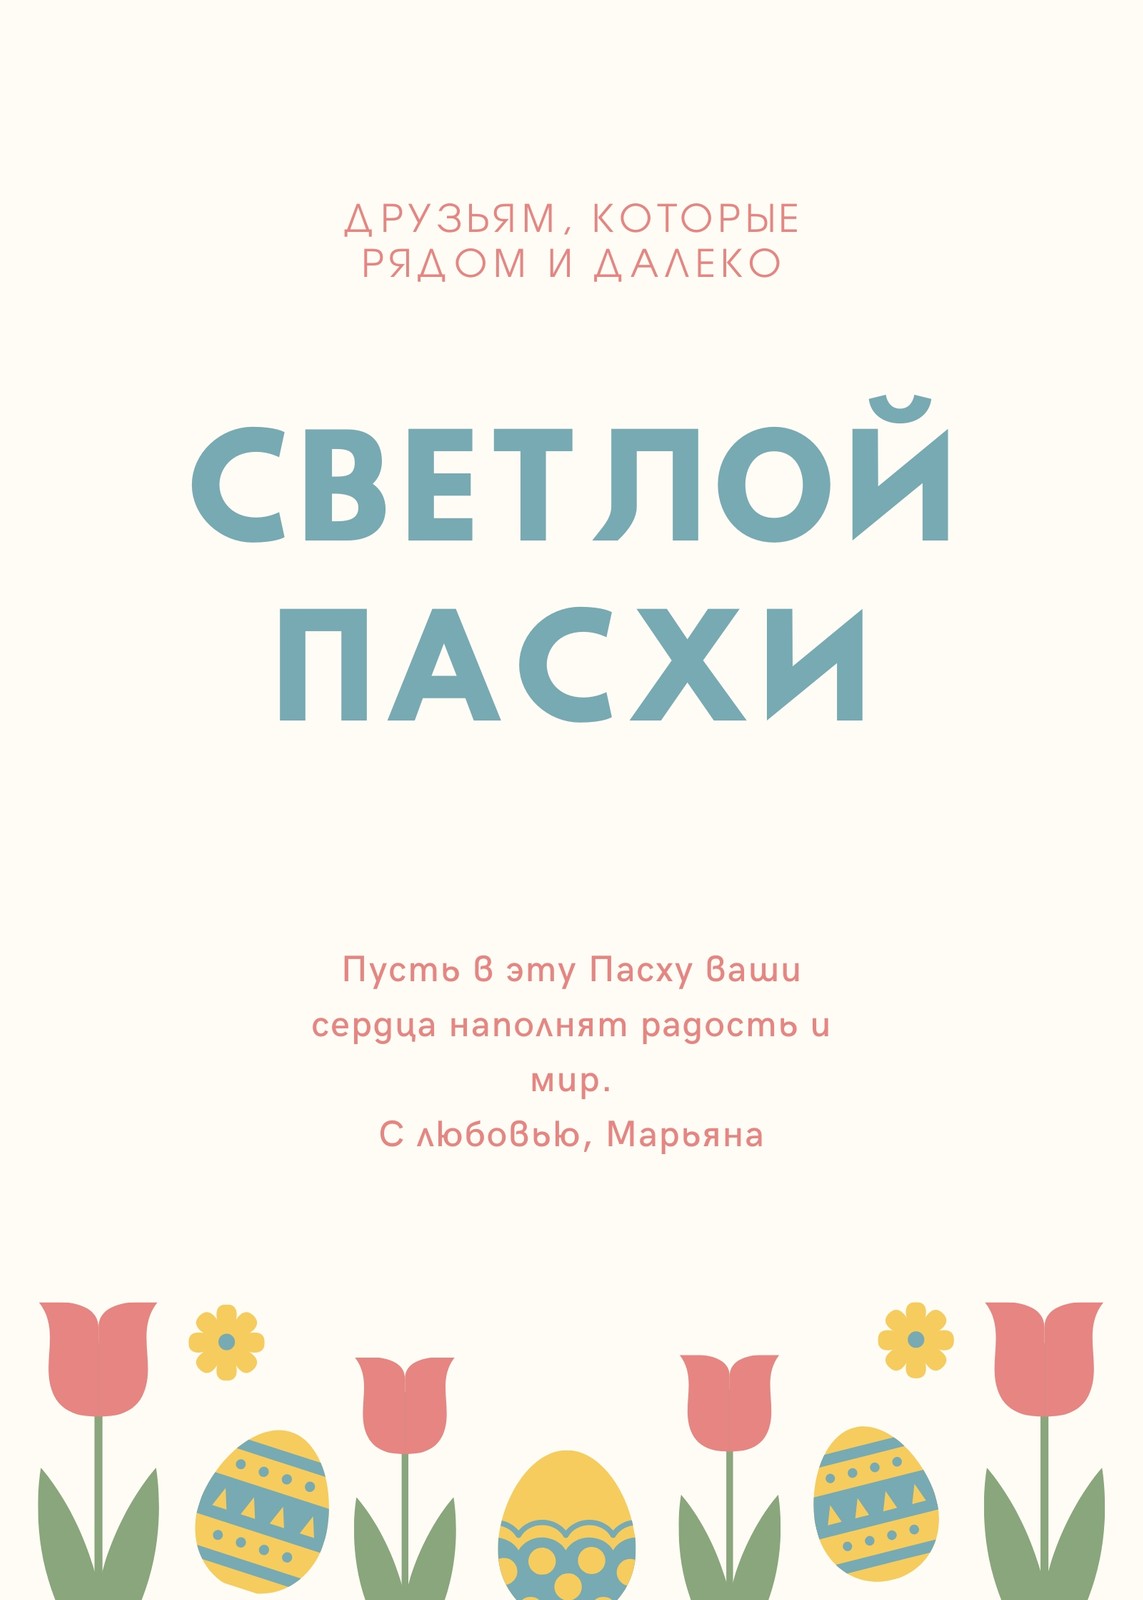 Поздравительные открытки евро формата от производителя оптом: заказать в типографии, Москва